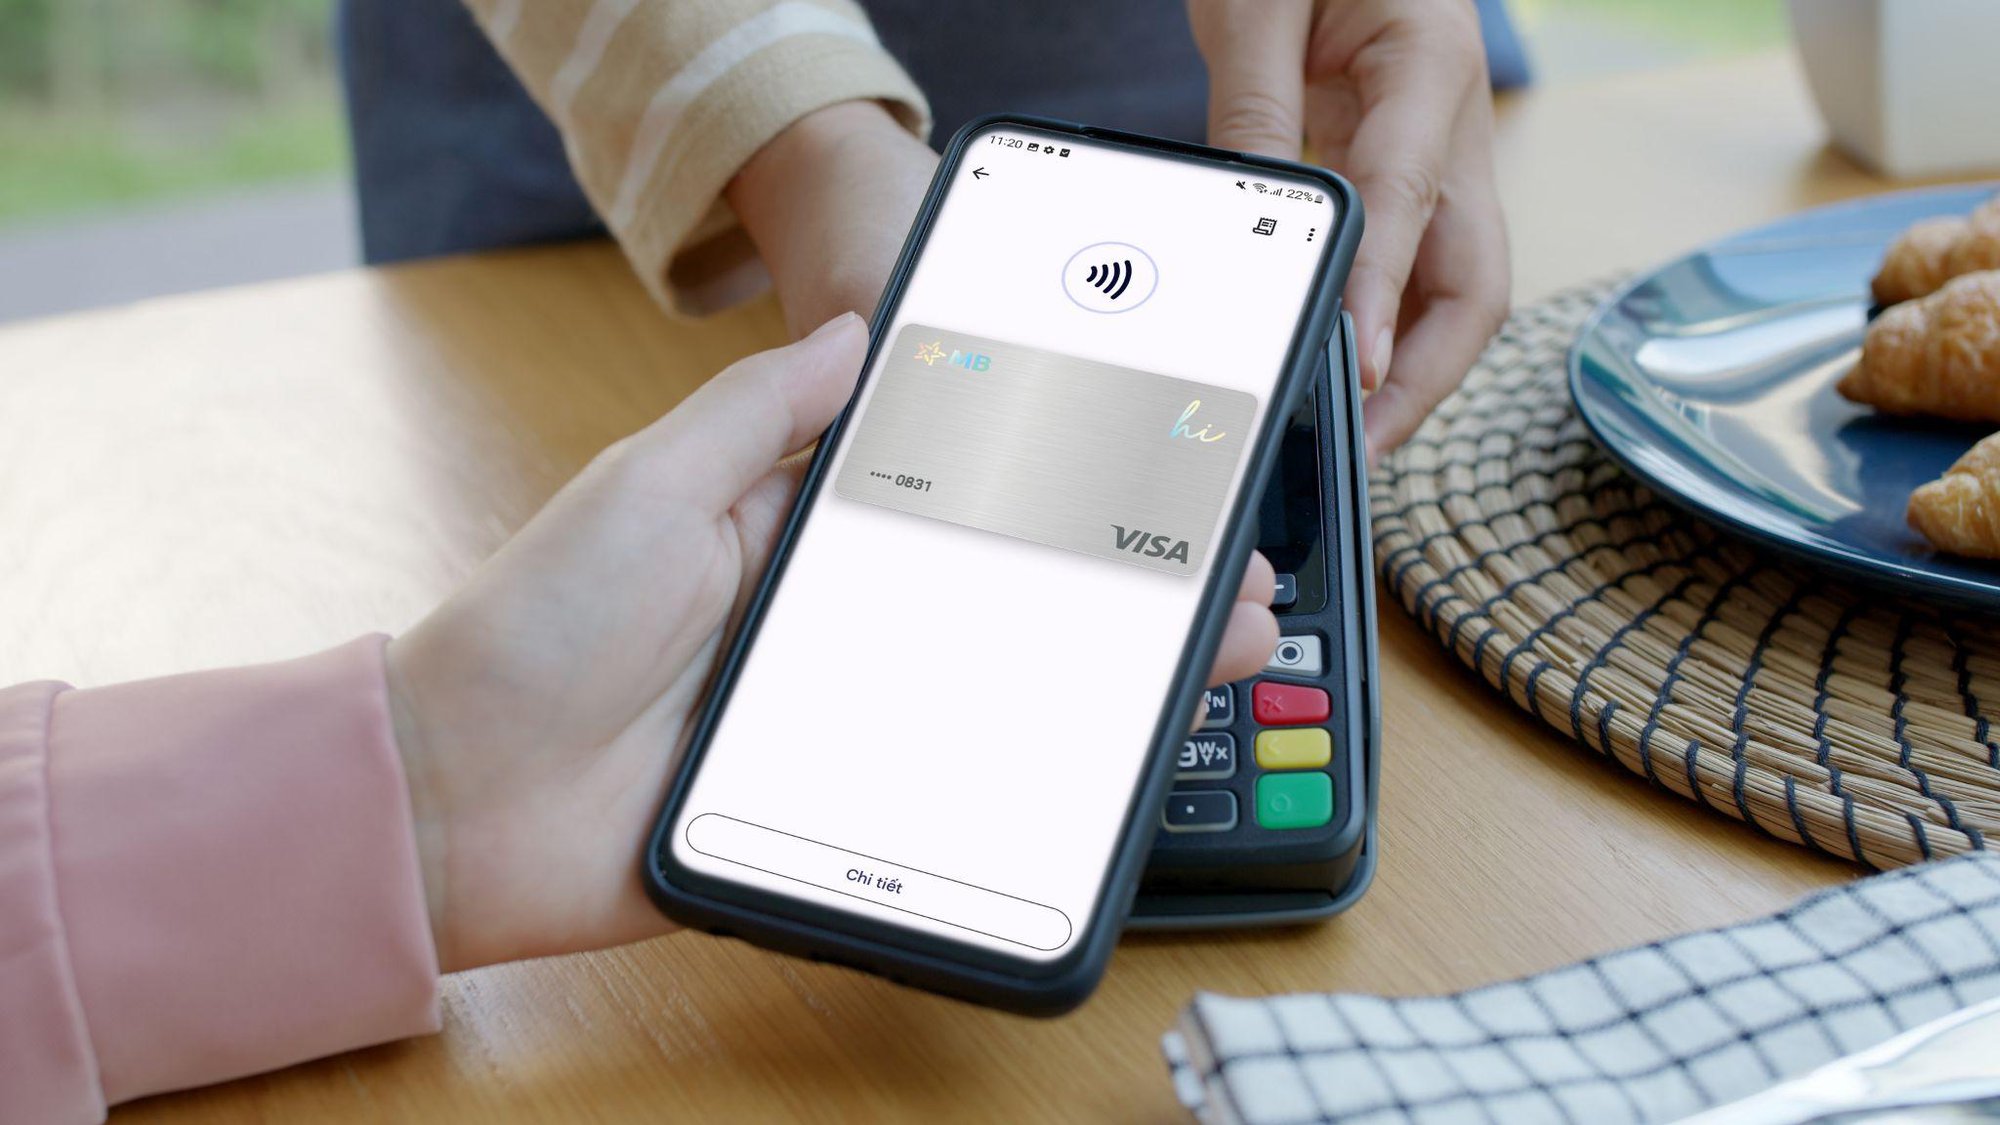 MB Visa liên kết với Google Pay: kết nối thanh toán thuận tiện, hoàn tiền lên tới 100k - Ảnh 3.